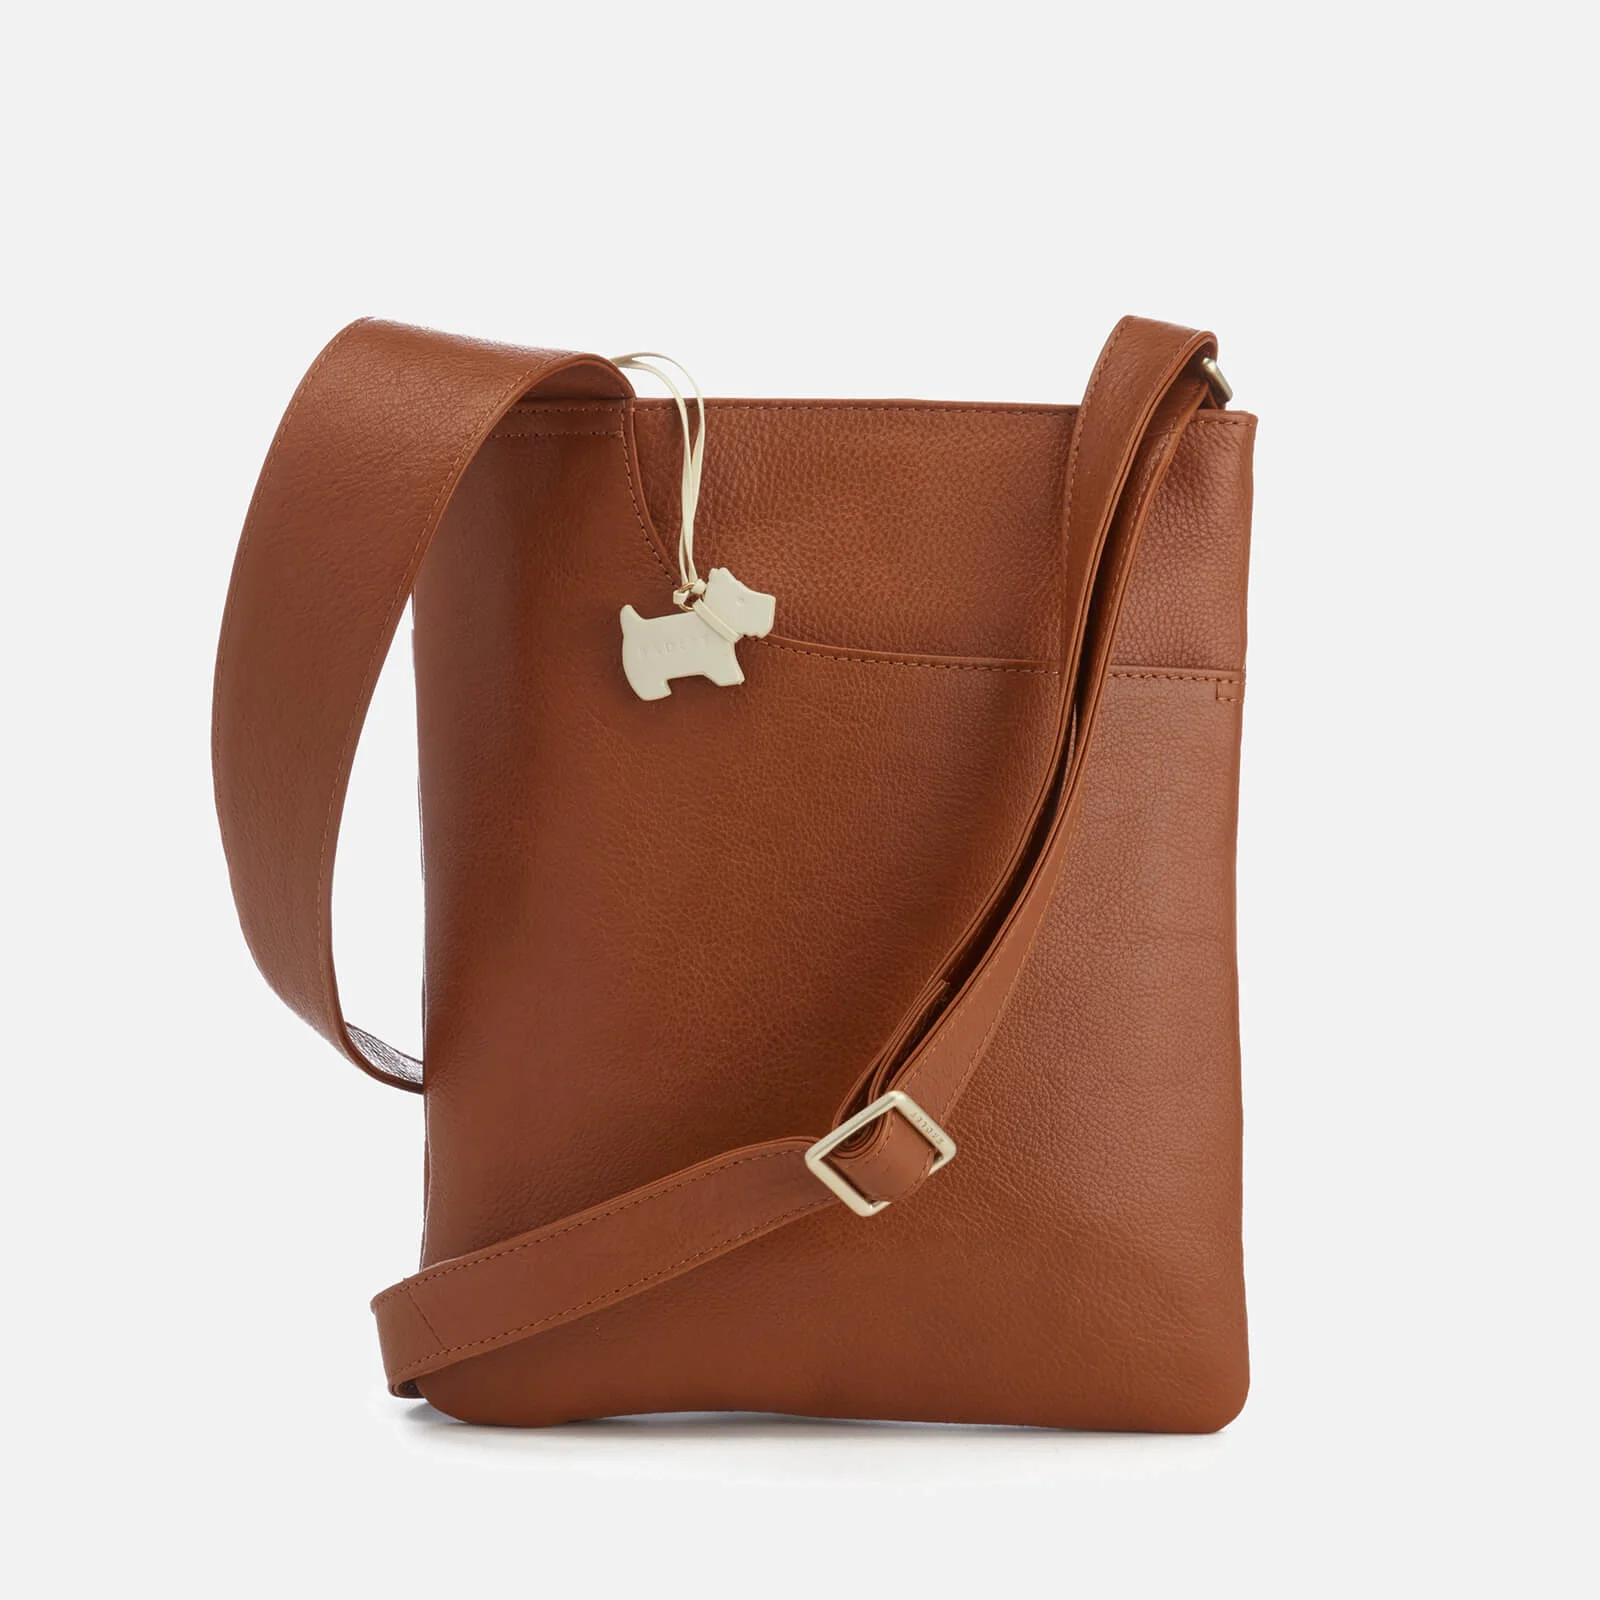 Radley Women's Pocket Bag Medium Zip Top Cross Body Bag - Tan Image 1